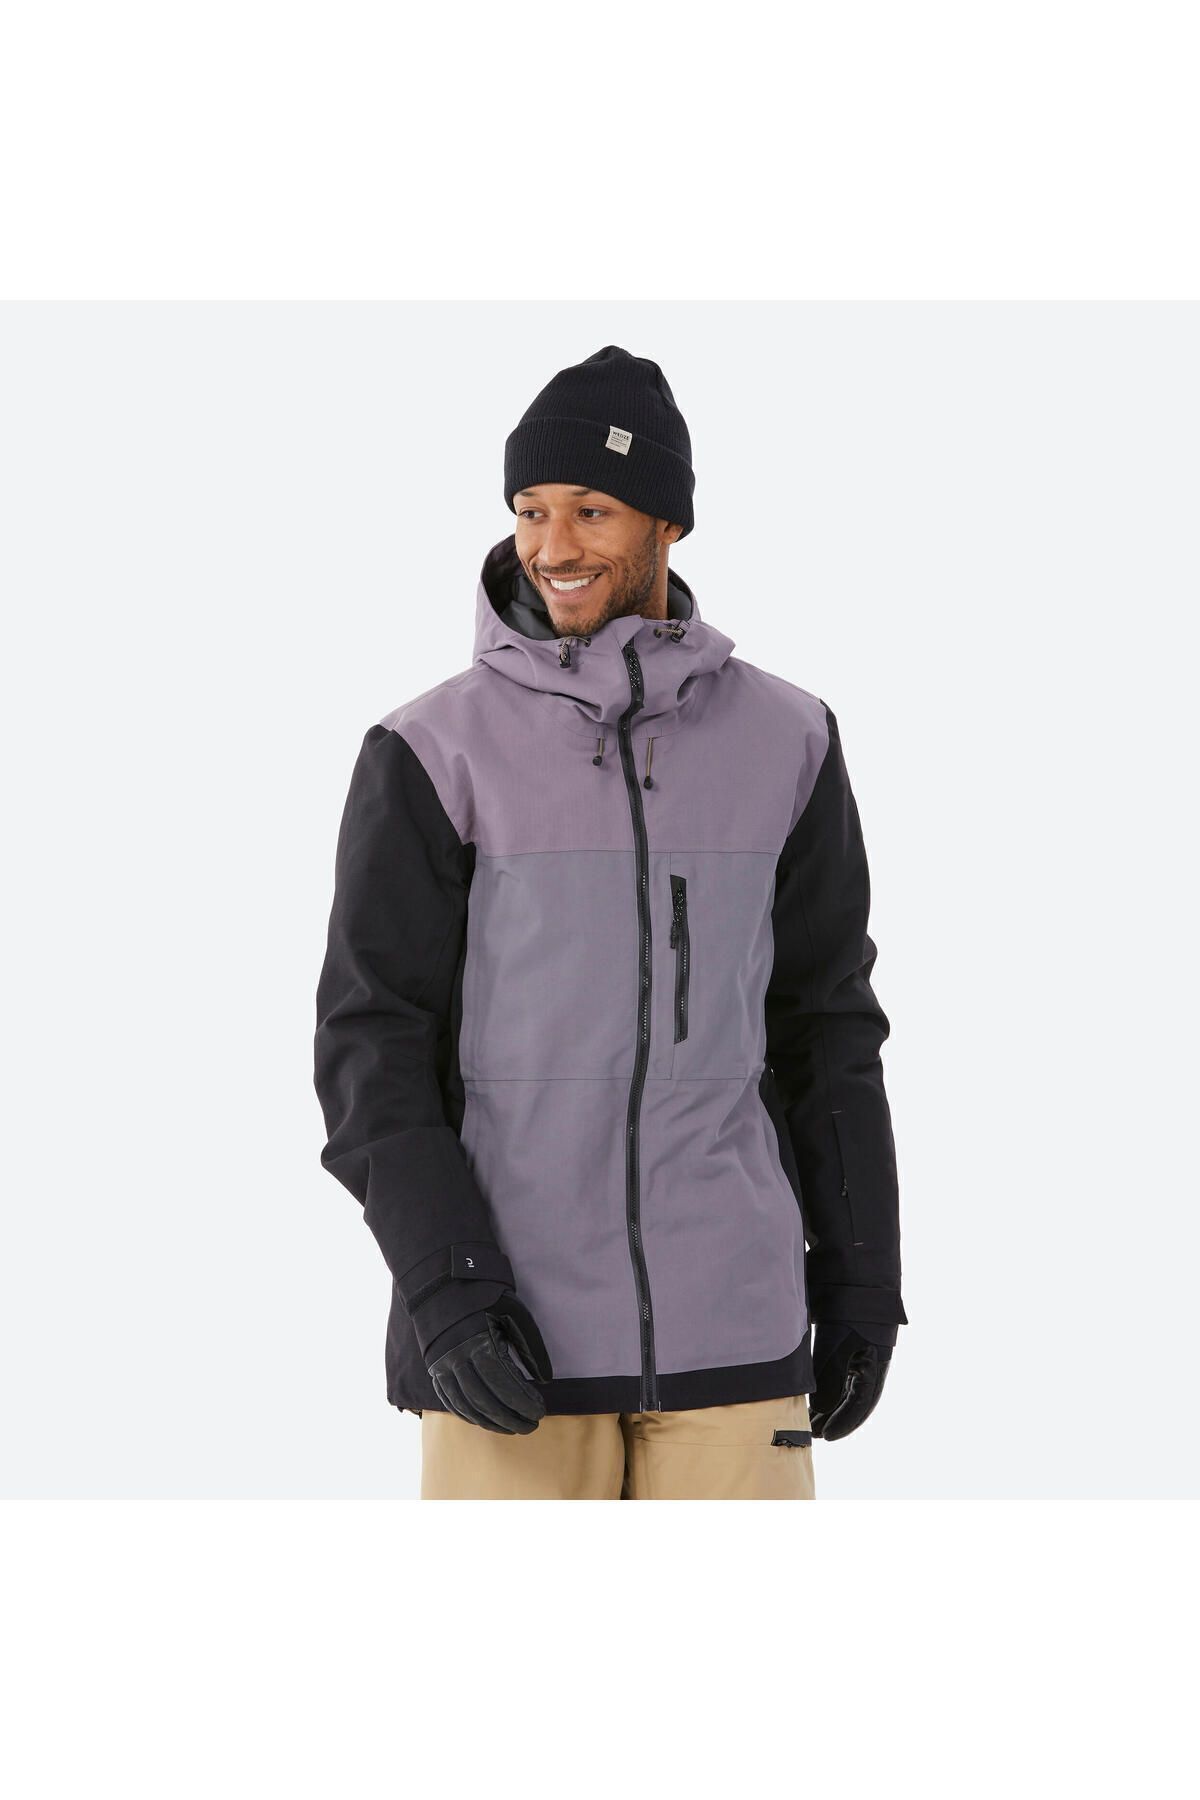 Мужская сноубордическая куртка Decathlon — фиолетовая — SNB 500 329833-T